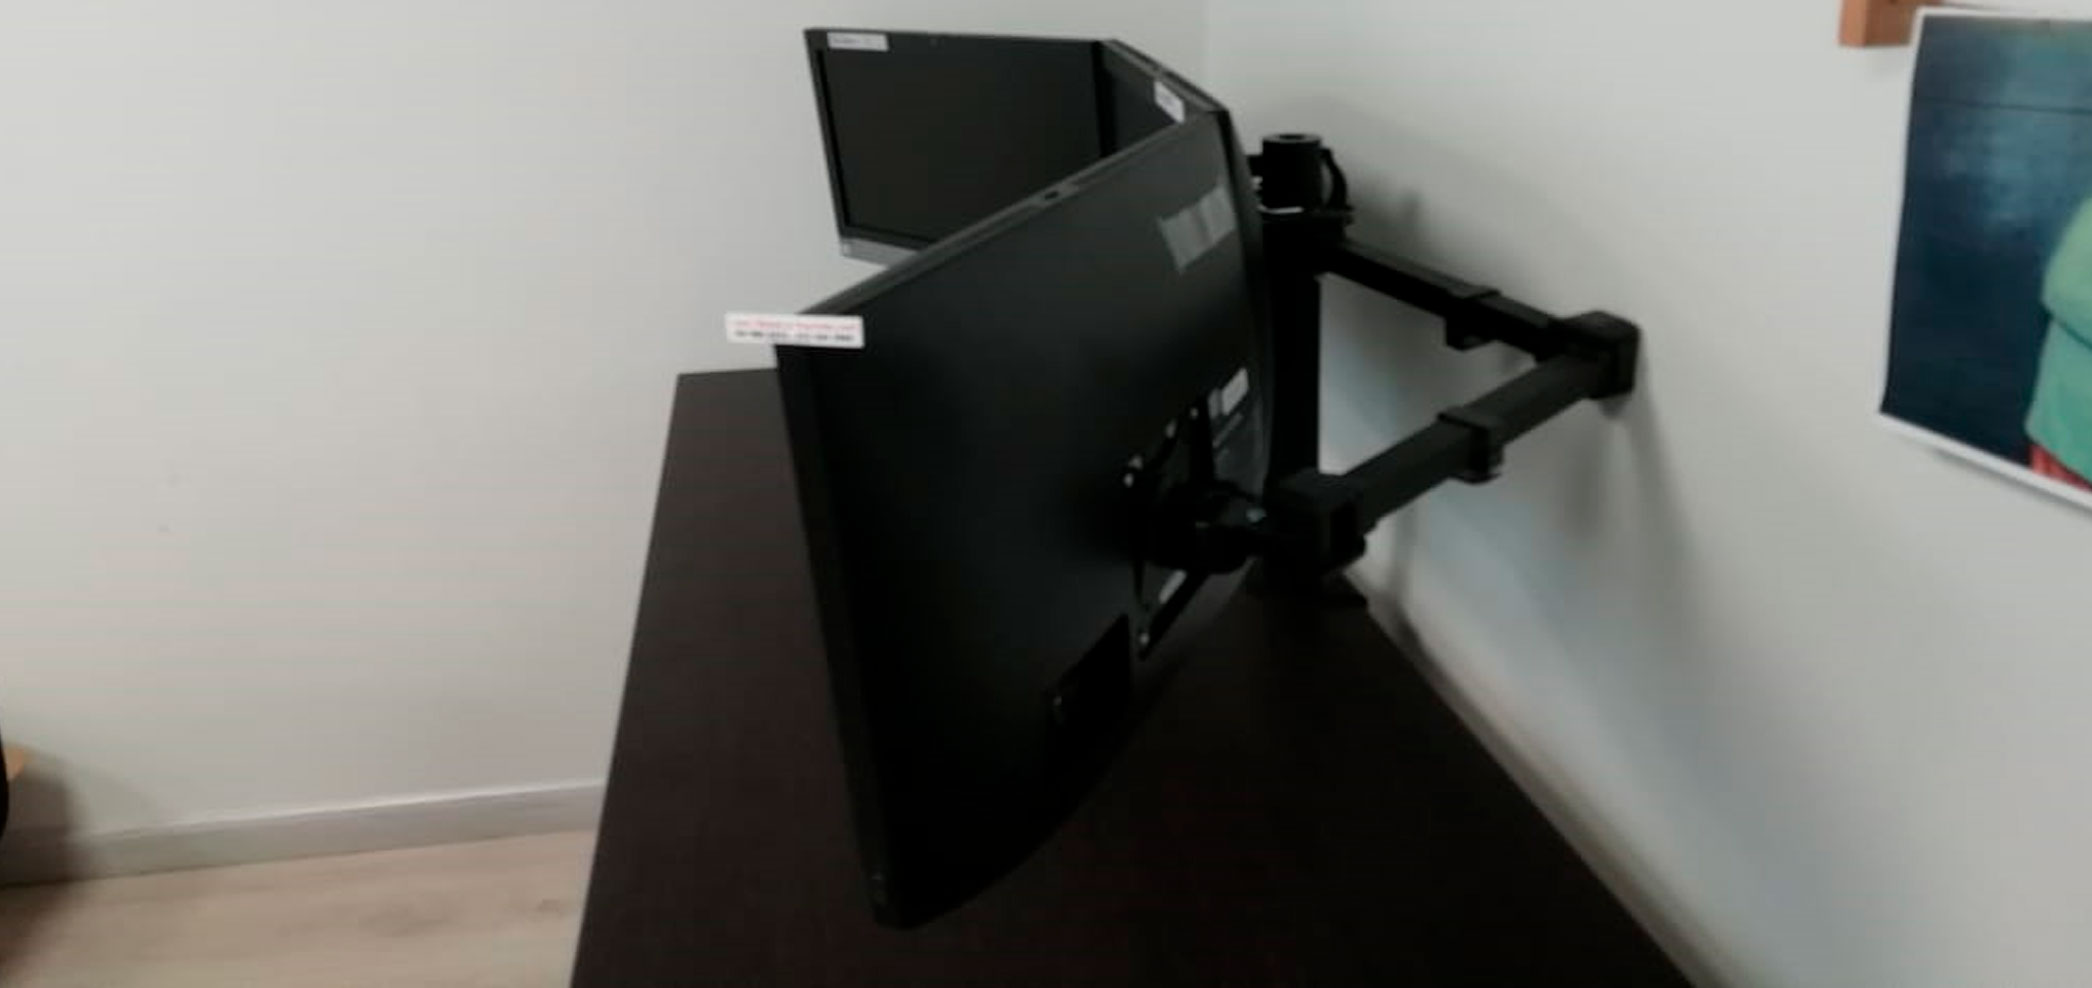 Soporte con prensa para instalacion de 3 monitores